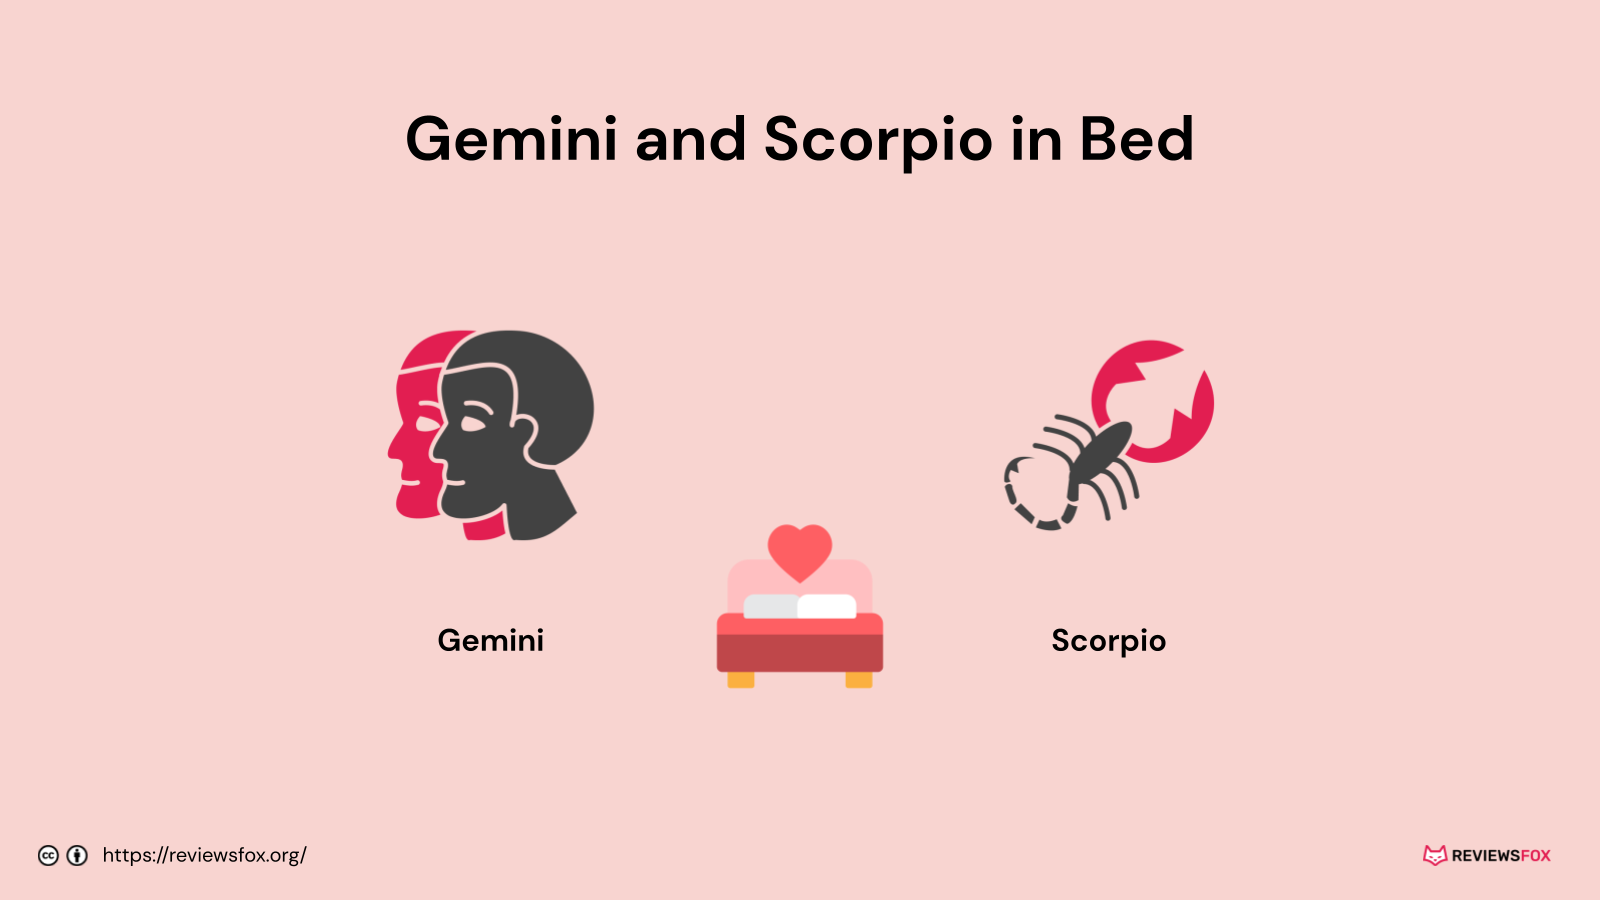 Gemini and Scorpio in bed